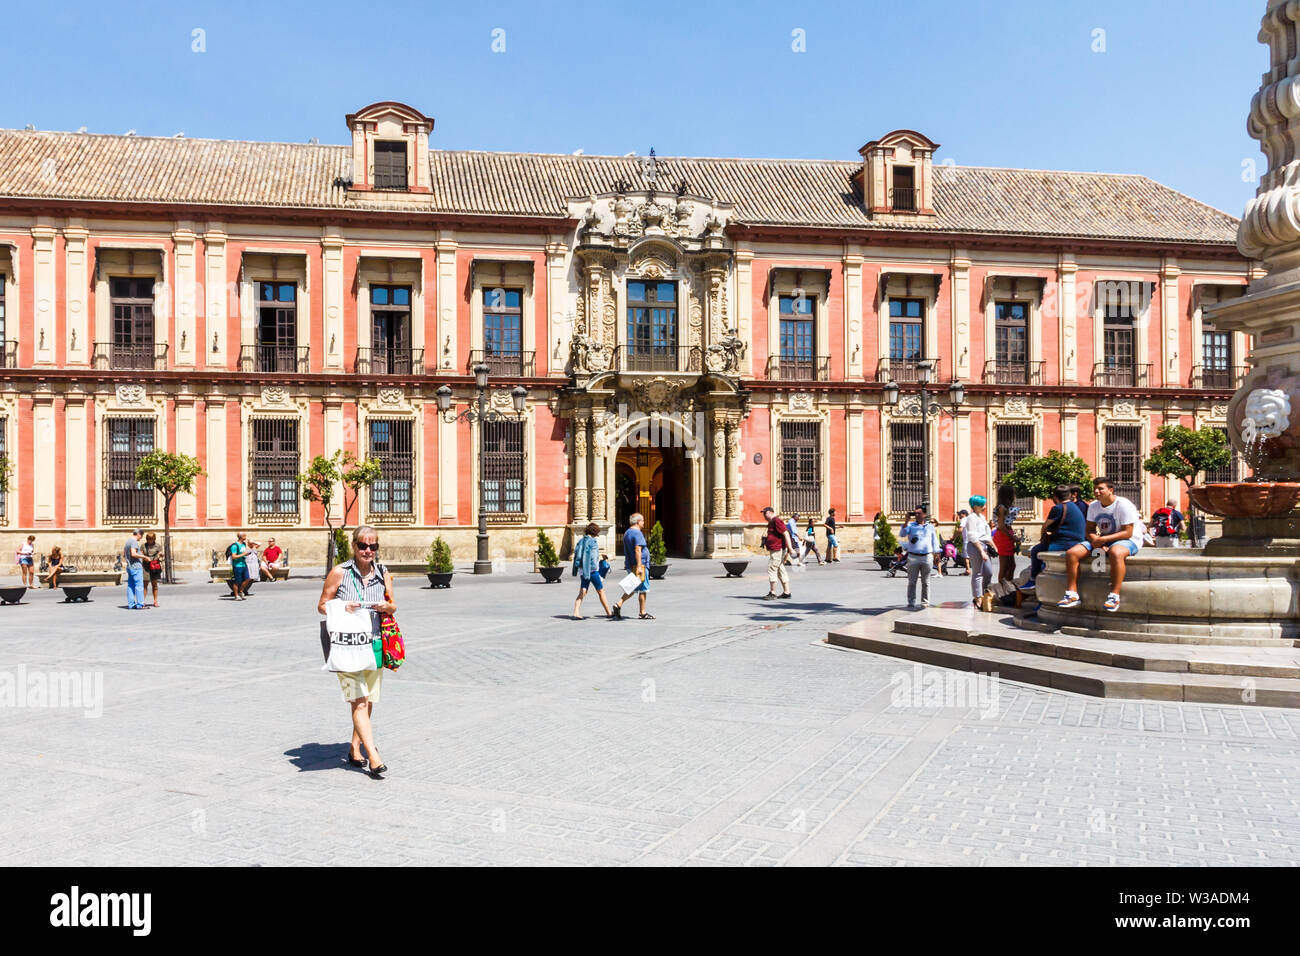 Sevilla, Spanien - 3. September 2015: Touristen zu Fuß rund um den Plaza Virgen de los Reyes. Dies ist einer der wichtigsten Plätze in der Altstadt. Stockfoto